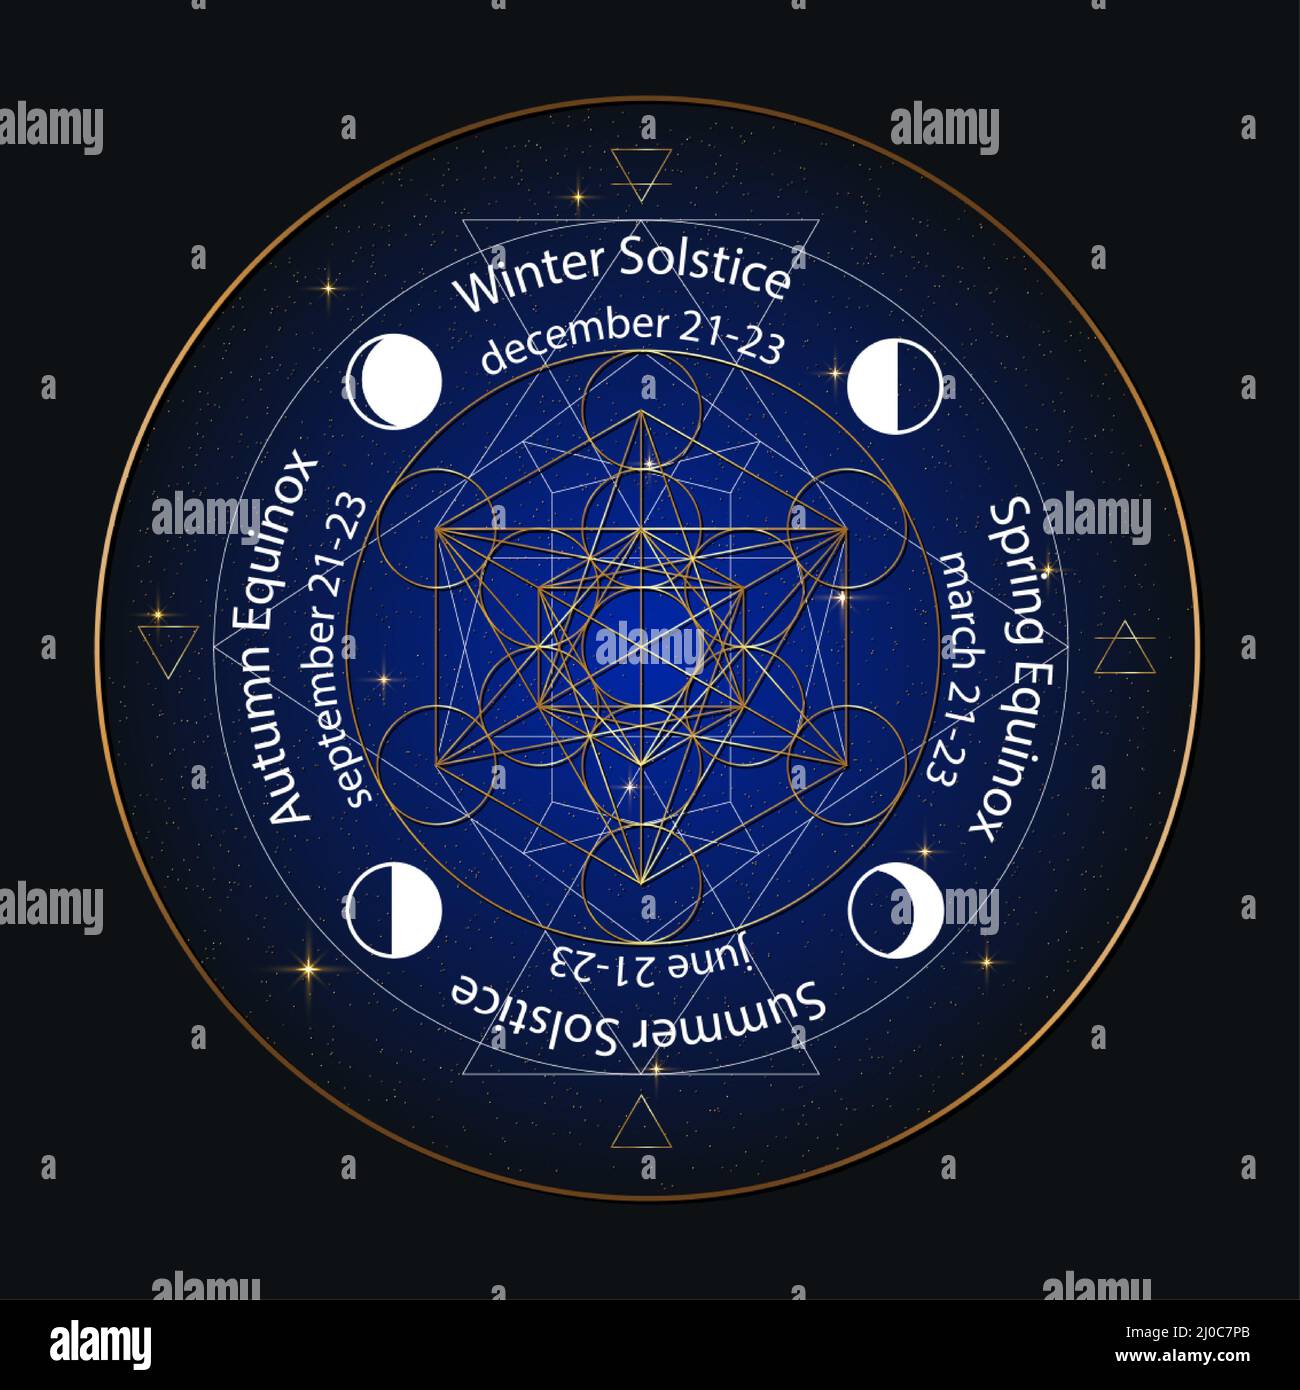 cerchio di solstice ed equinox stilizzato come disegno geometrico lineare con linee sottili bianche e dorate sullo sfondo del cielo notturno con date e nomi Illustrazione Vettoriale